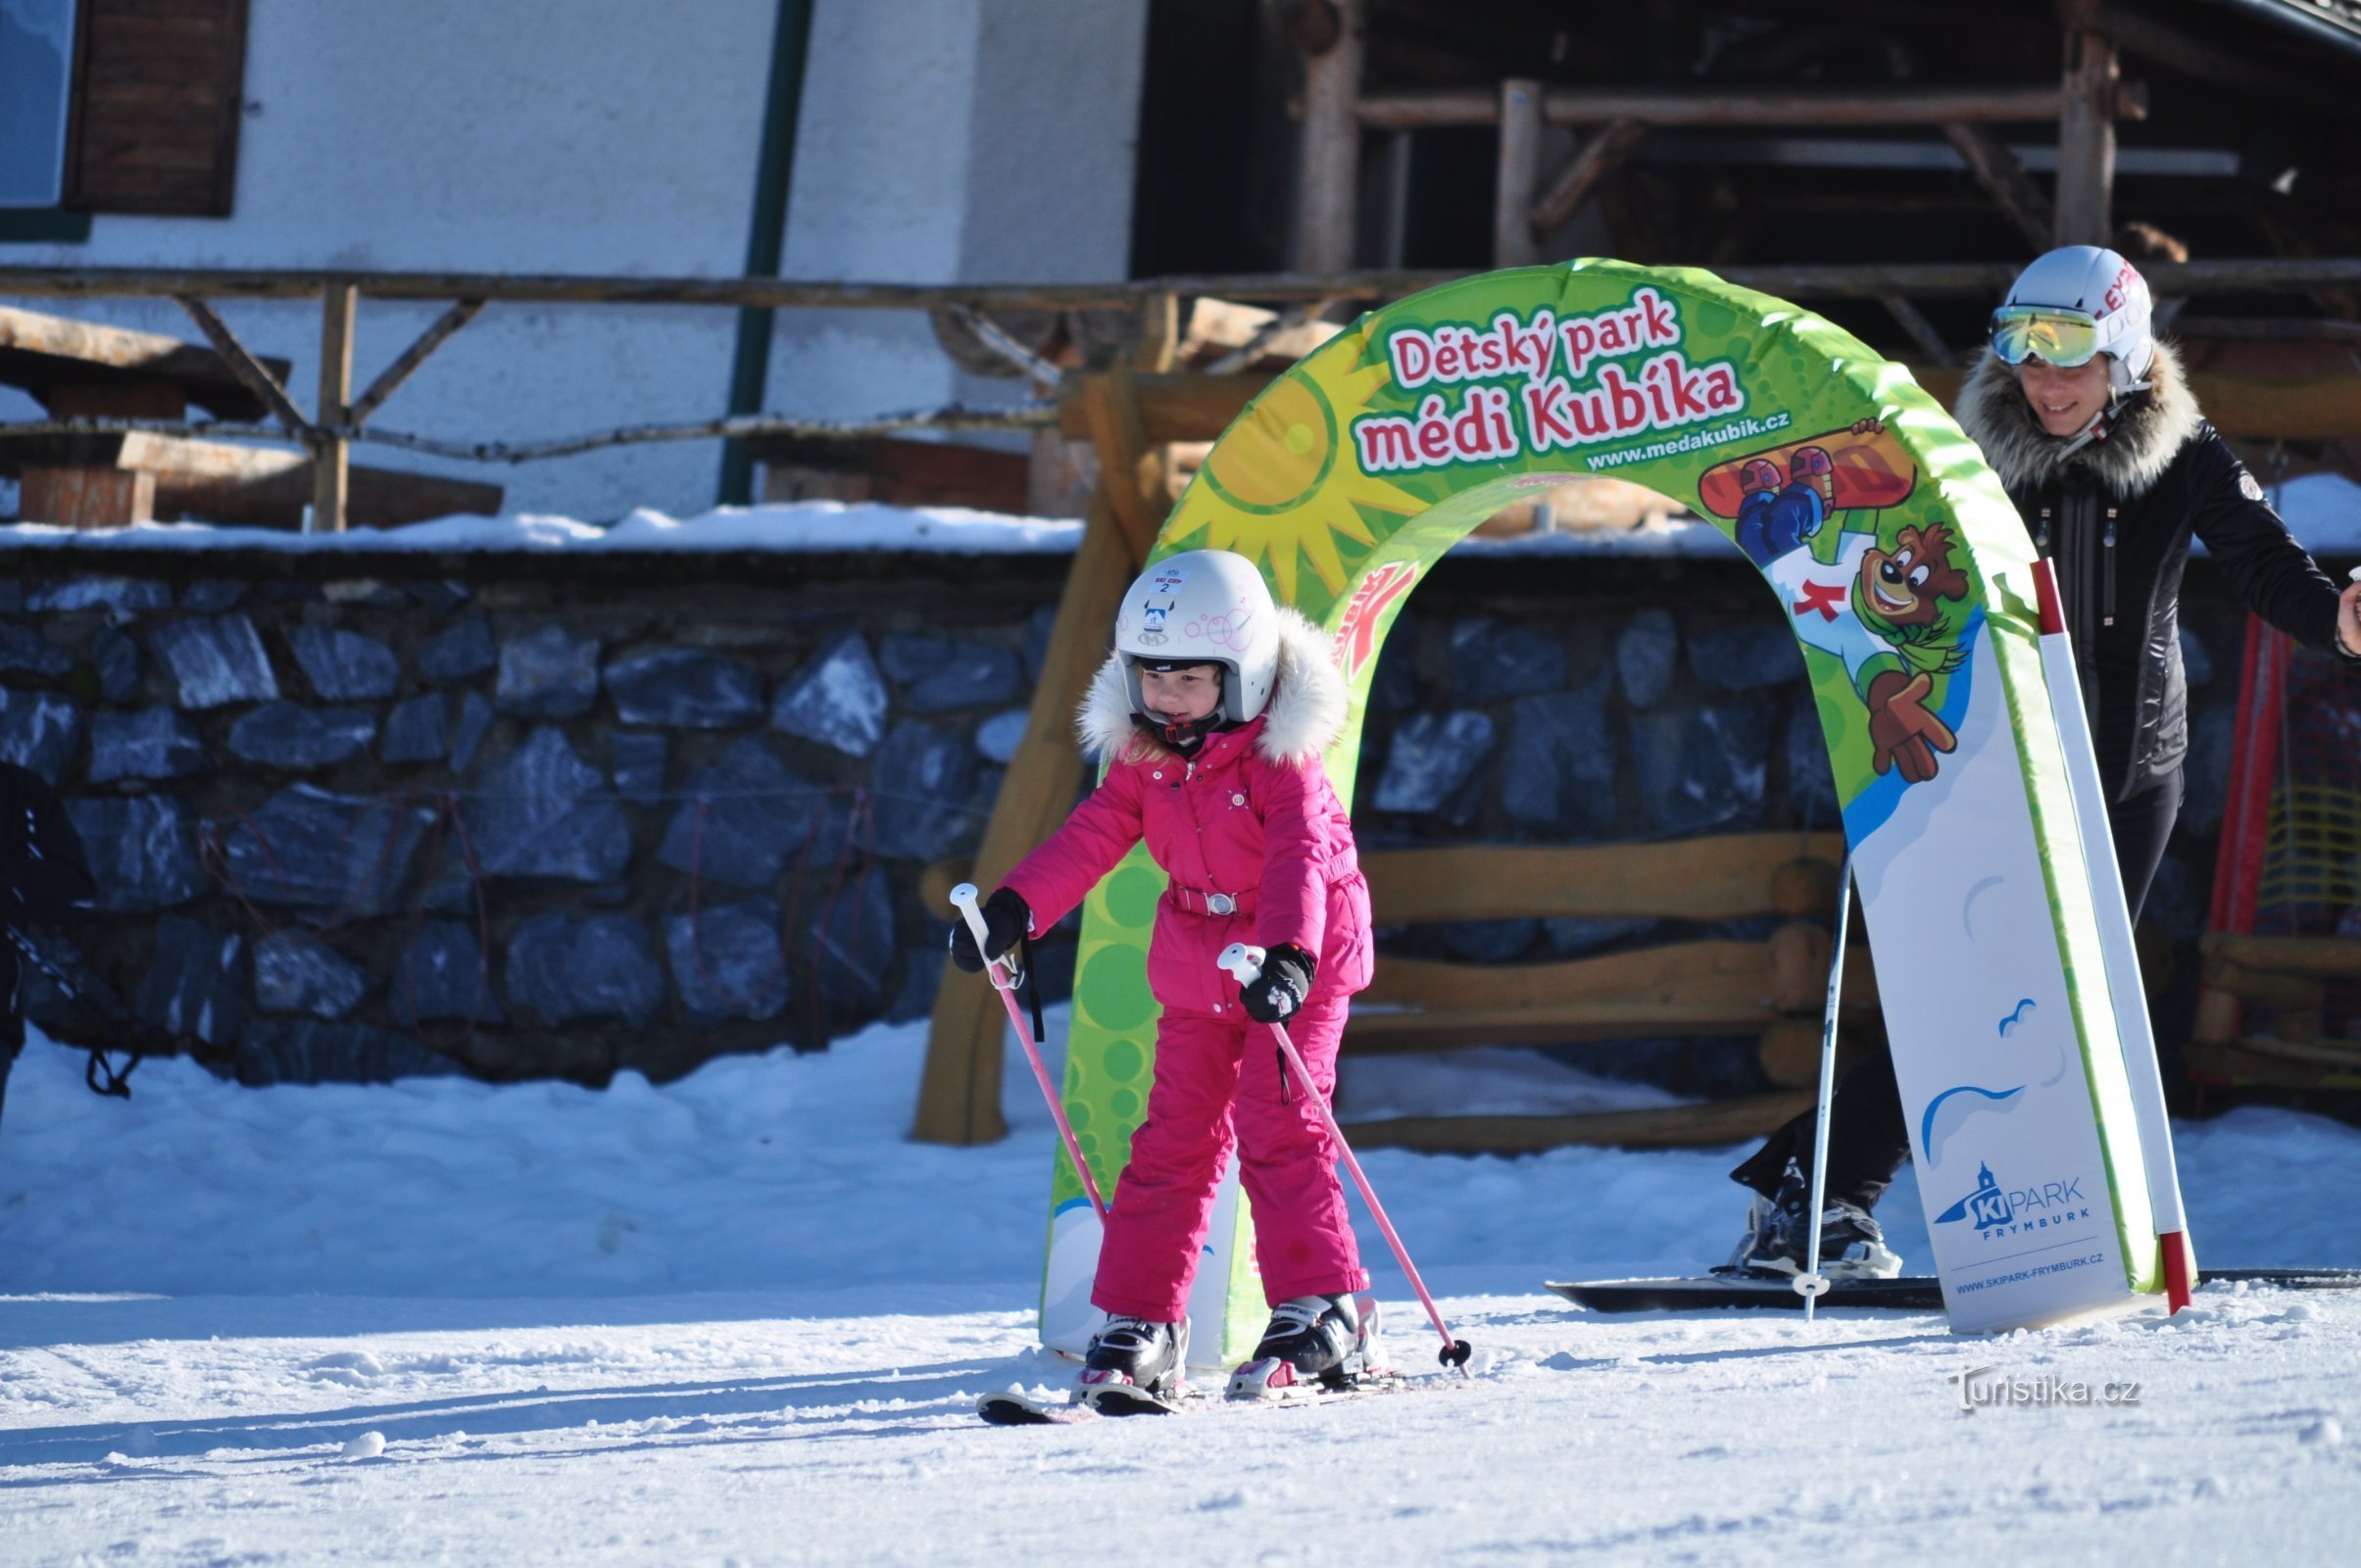 Elementy do jazdy na nartach są chlubą naszego dziecięcego parku